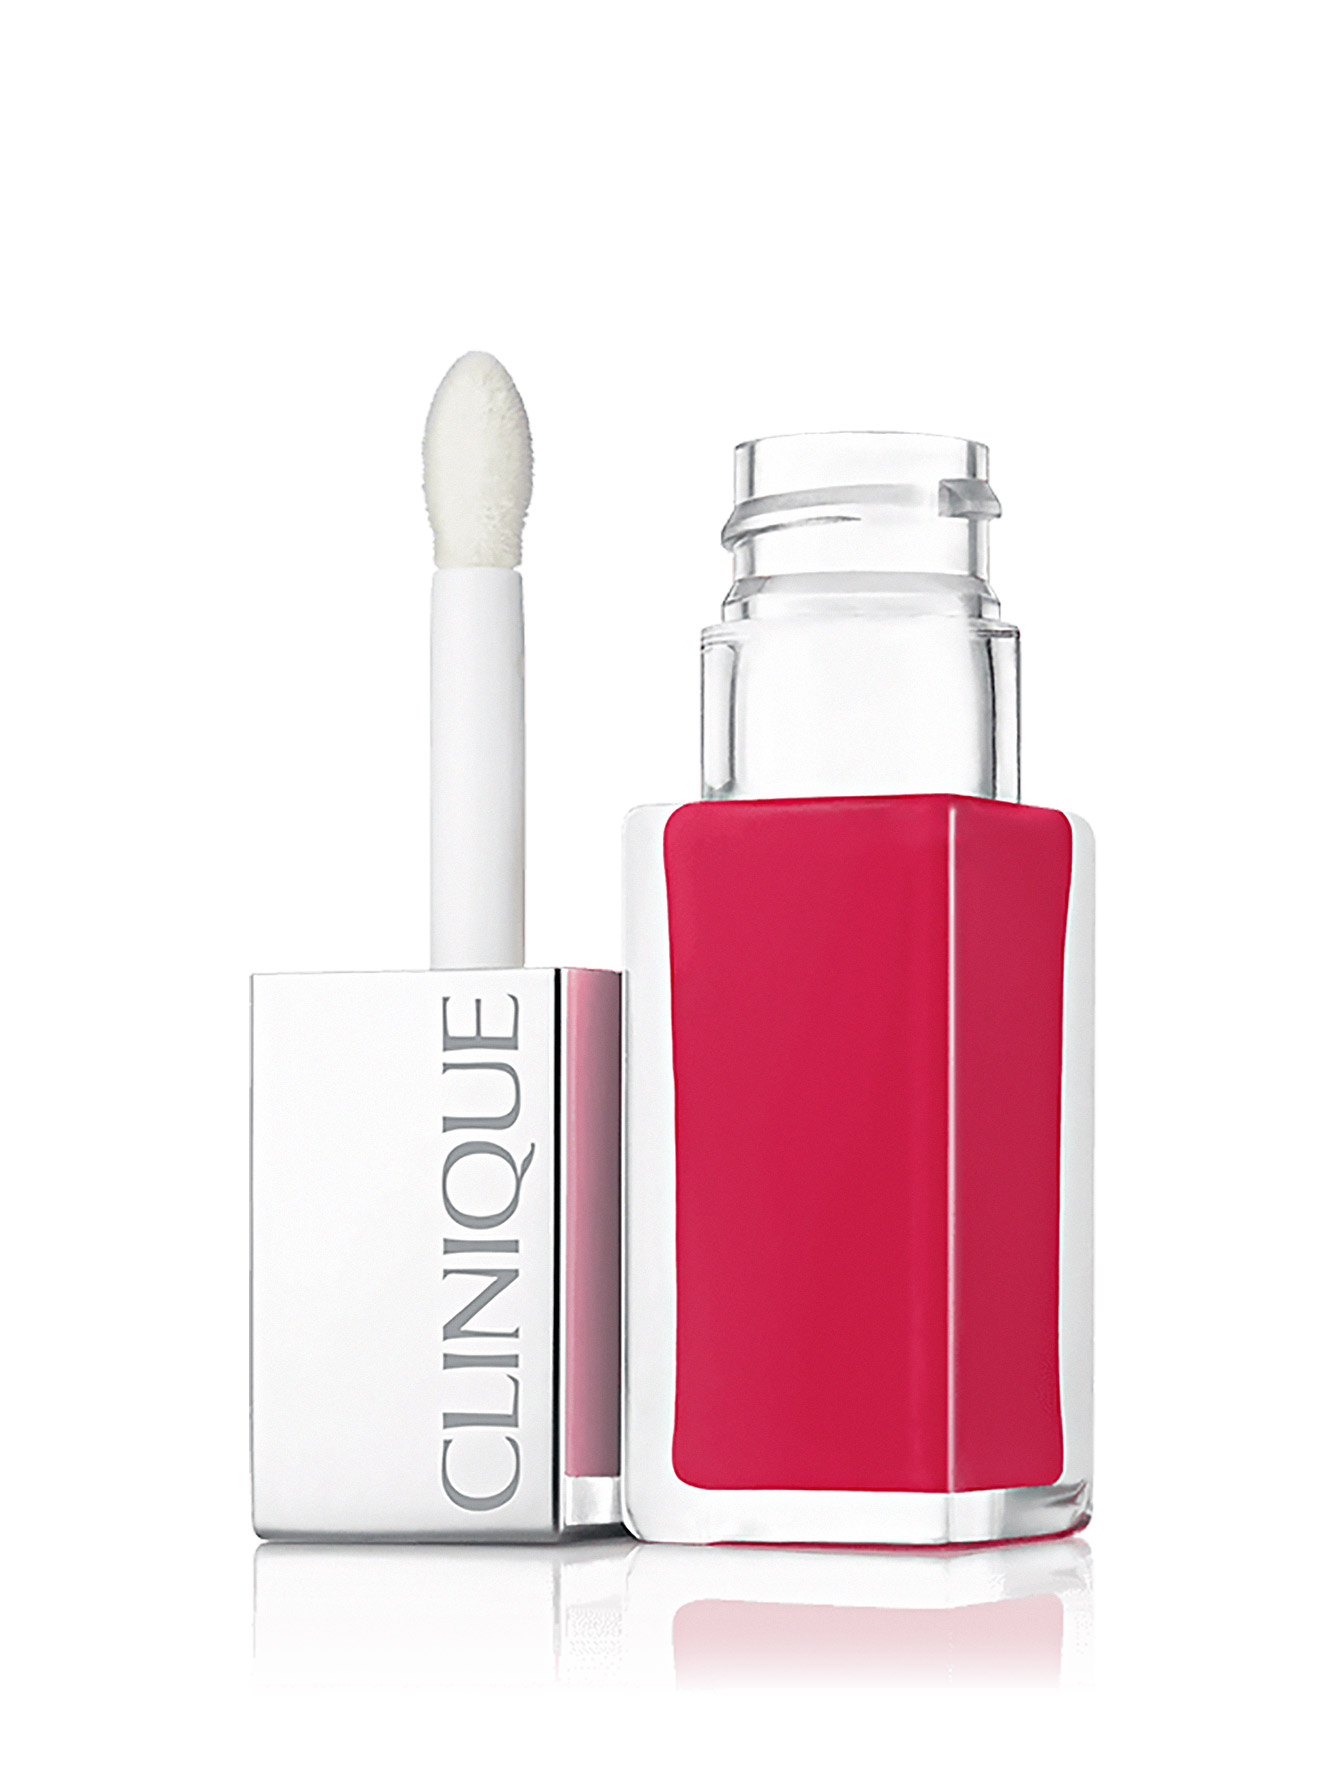  Лак для губ: интенсивный цвет и уход - №04 Sweet Pop, Clinique Pop, 6ml - Общий вид